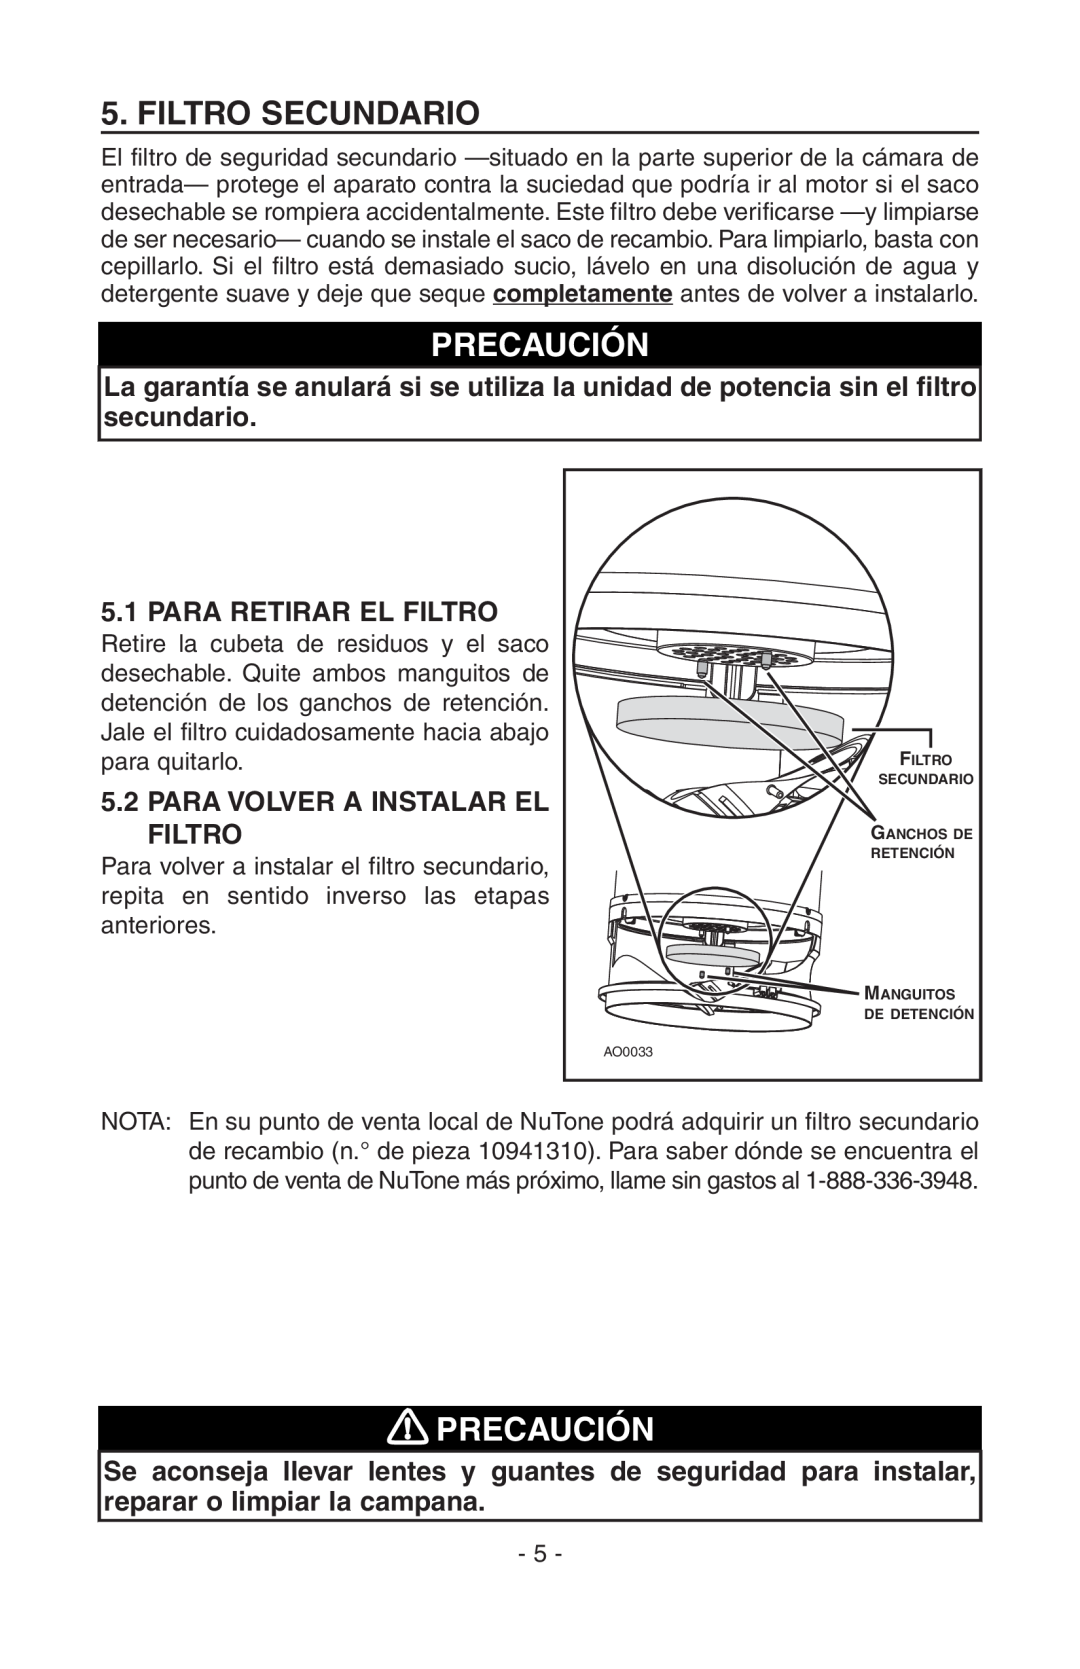 NuTone CV400, SFDB-DC manual Filtro Secundario, Precaución, 5.1PARA RETIRAR EL FILTRO, 5.2PARA VOLVER A INSTALAR EL FILTRO 